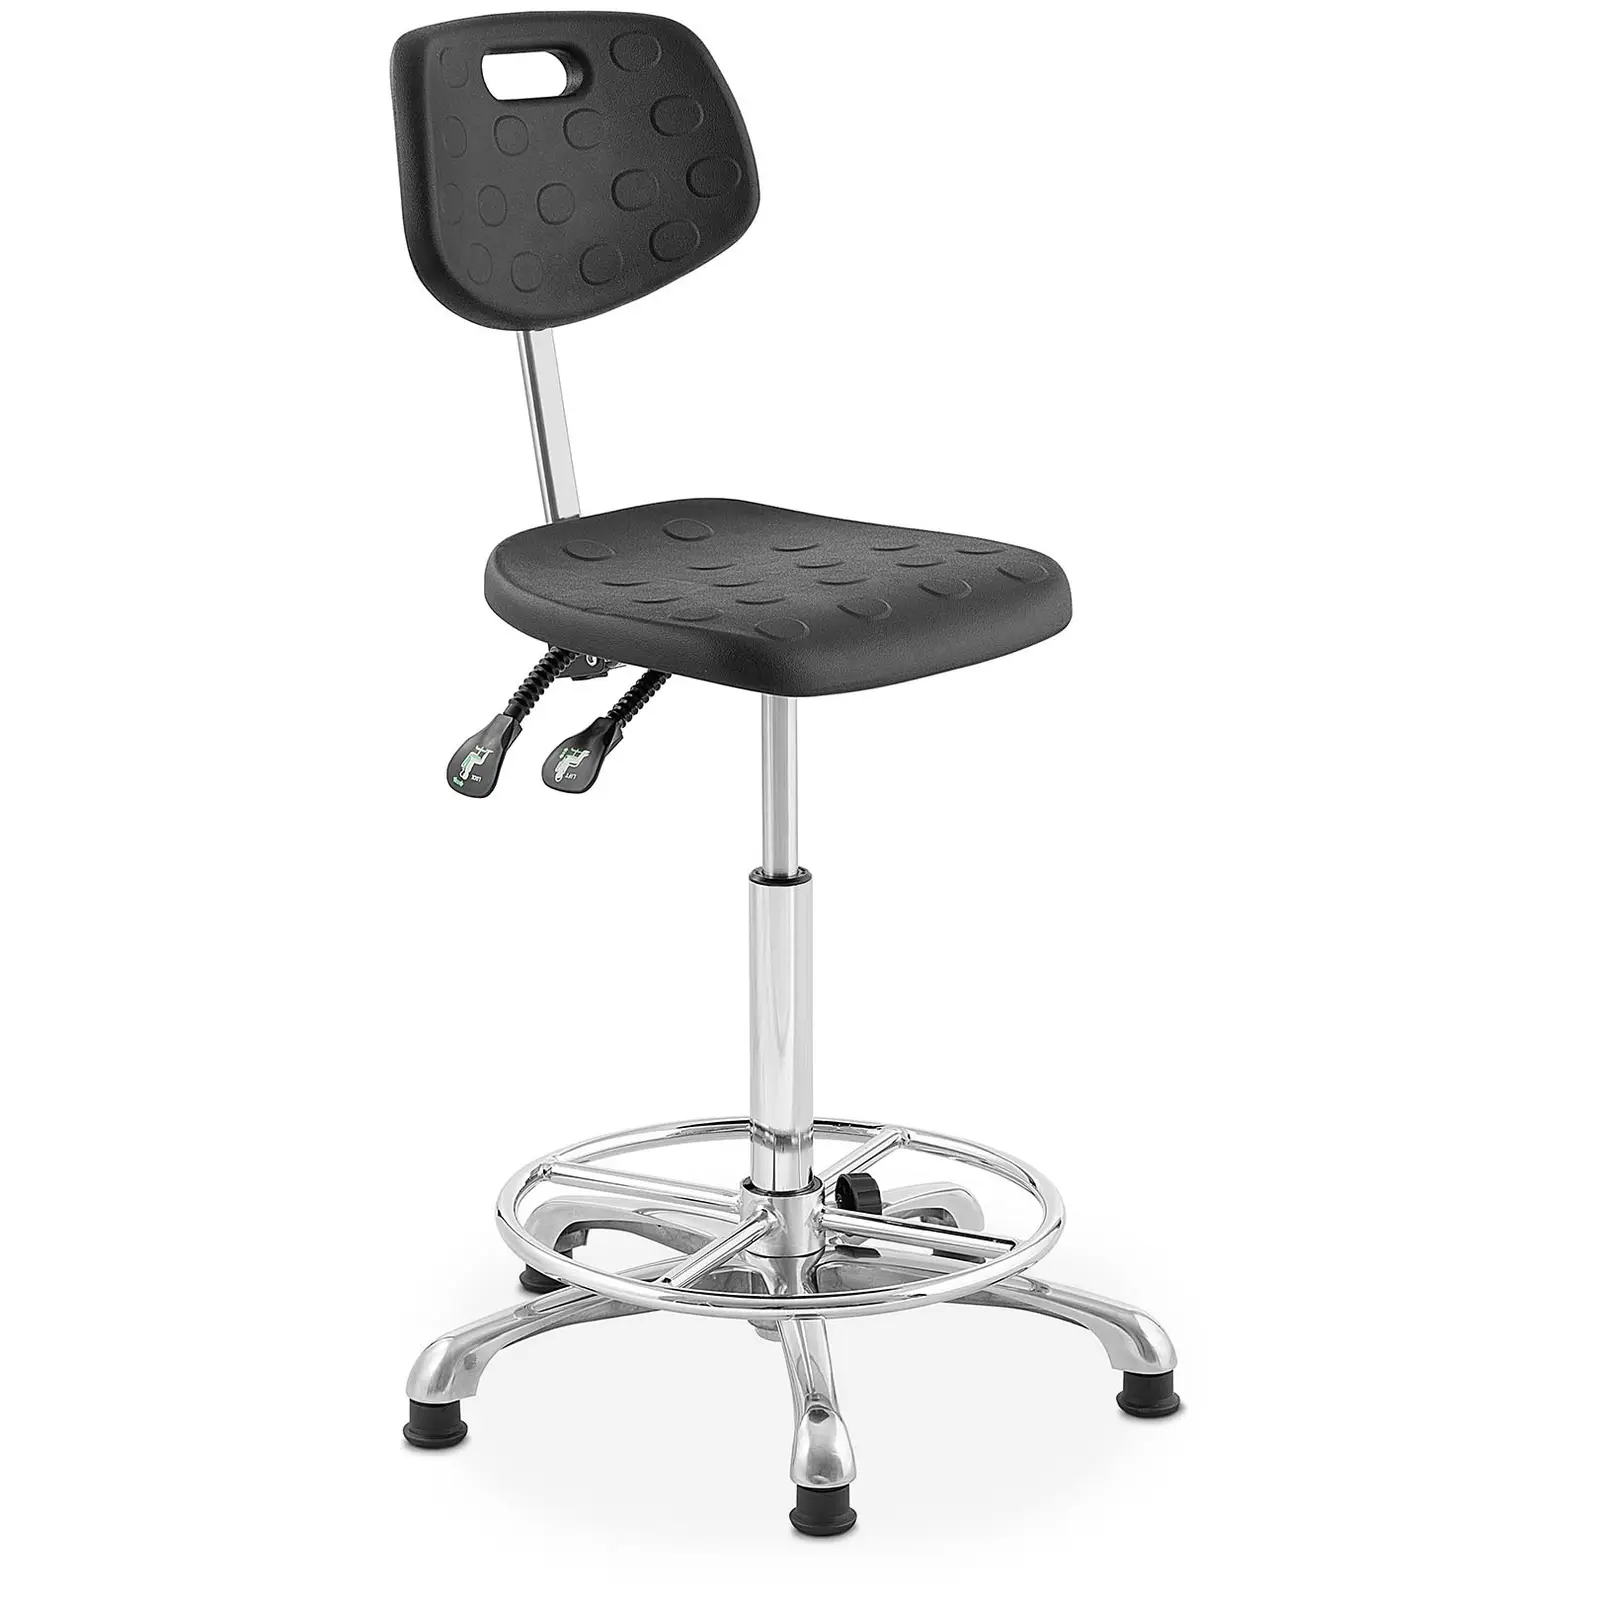 Chaise de laboratoire - 120 kg - Noir - Hauteur réglable de 515 - 780 mm